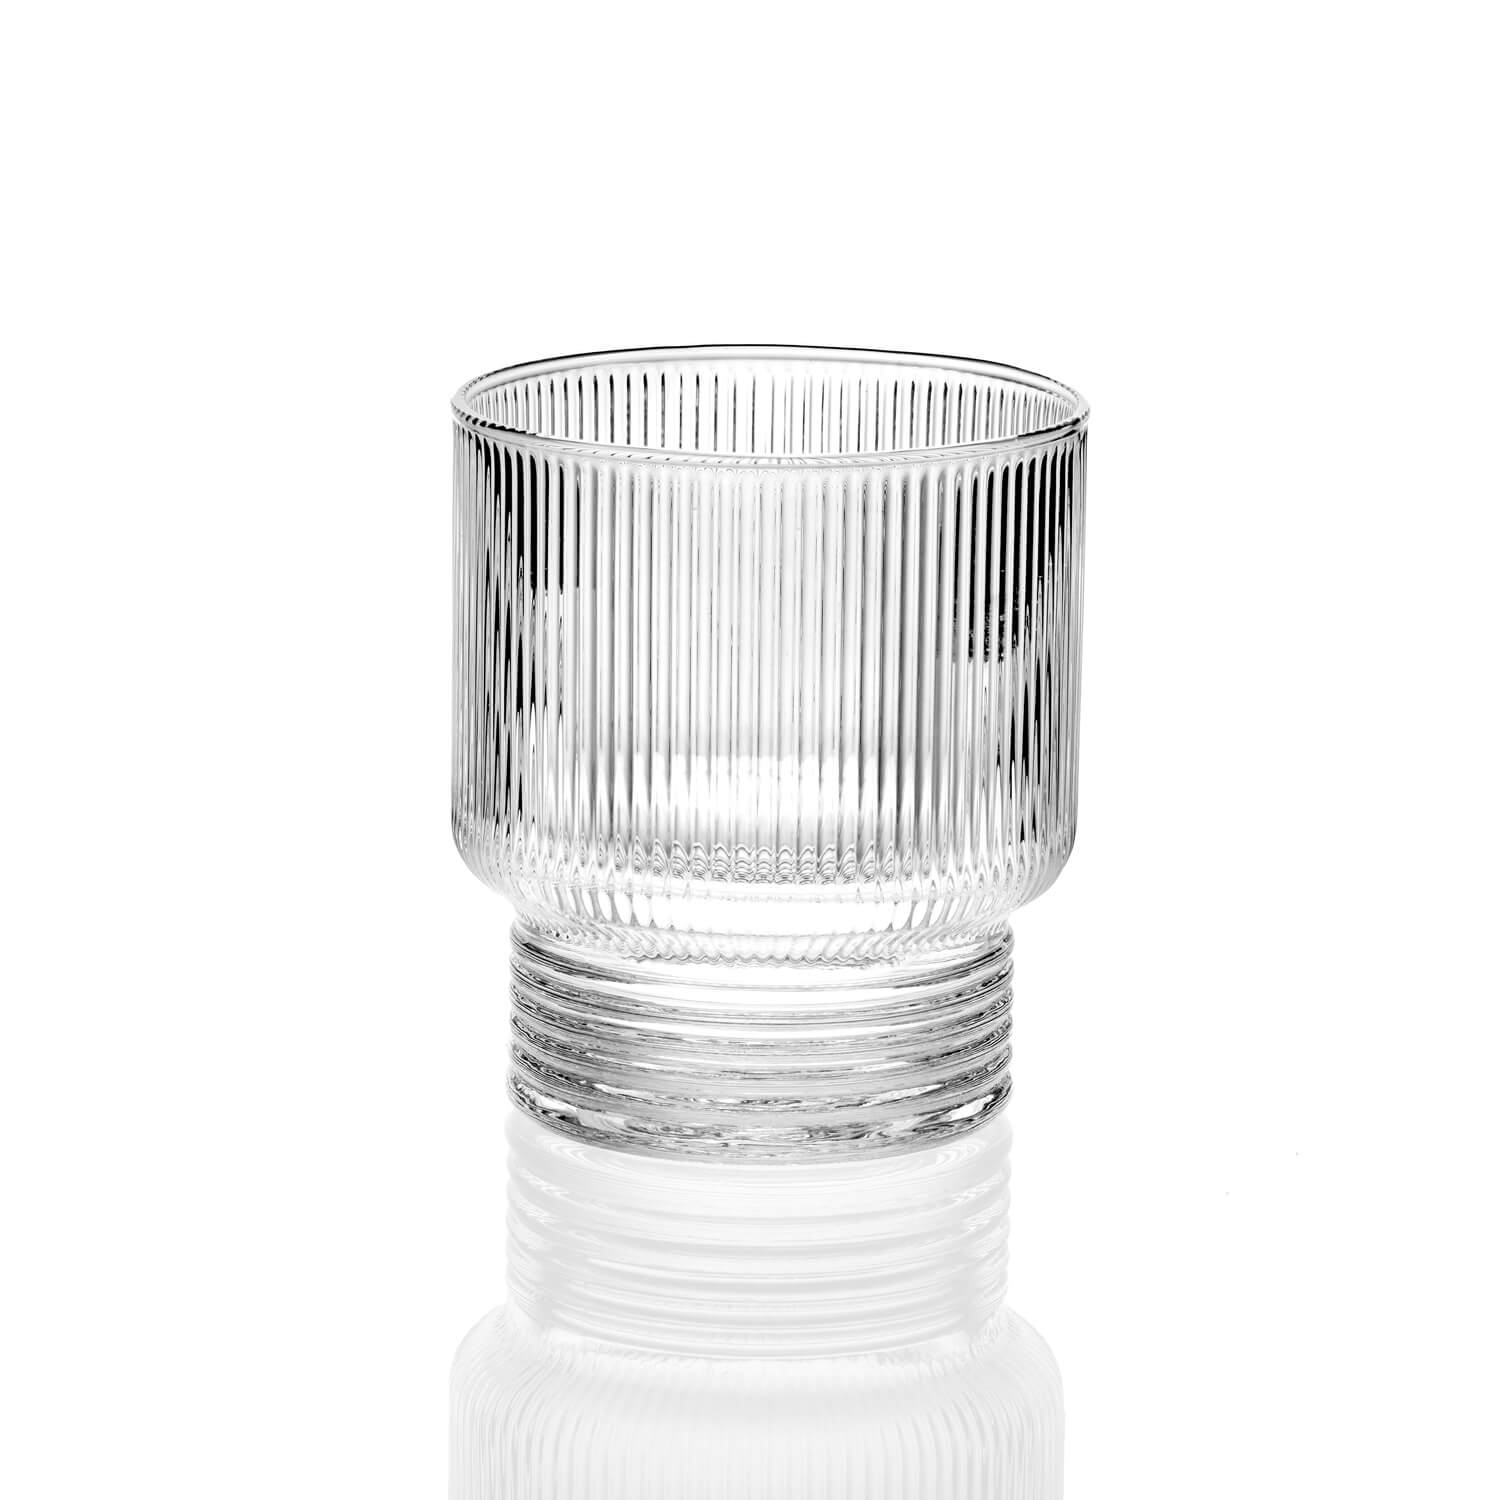 IVV Todo Modo Set 6 Water Glasses